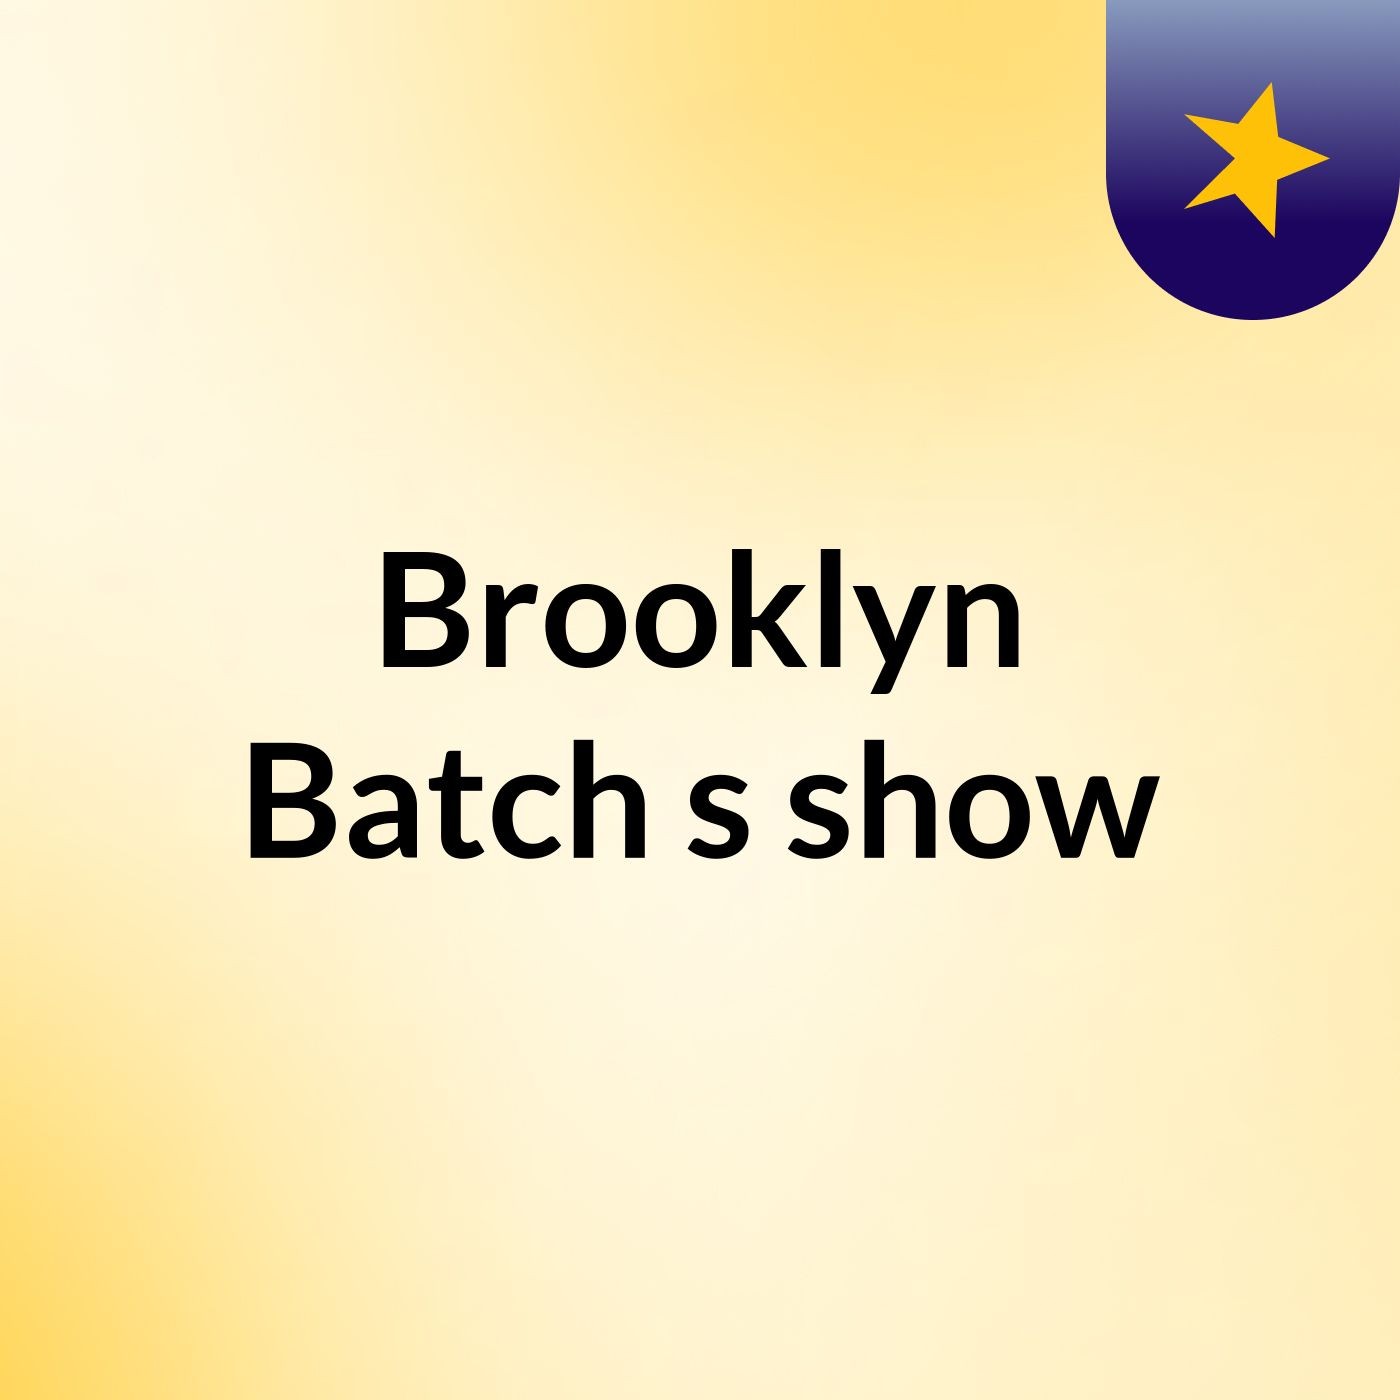 Brooklyn Batch's show